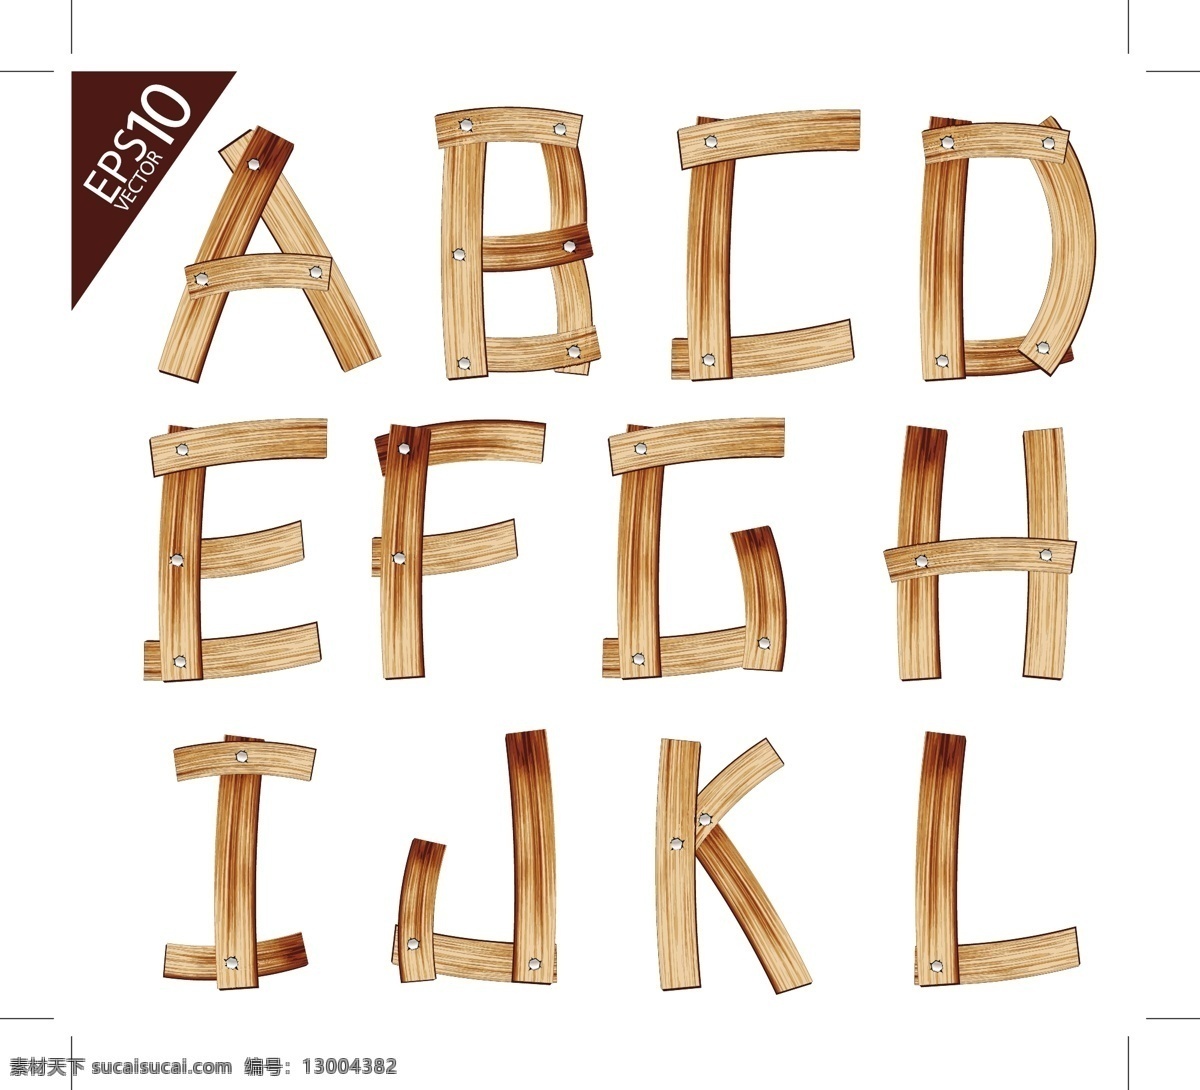 木头字体 木板字体 木质字体 字体设计 英文字体 背景底纹 底纹边框